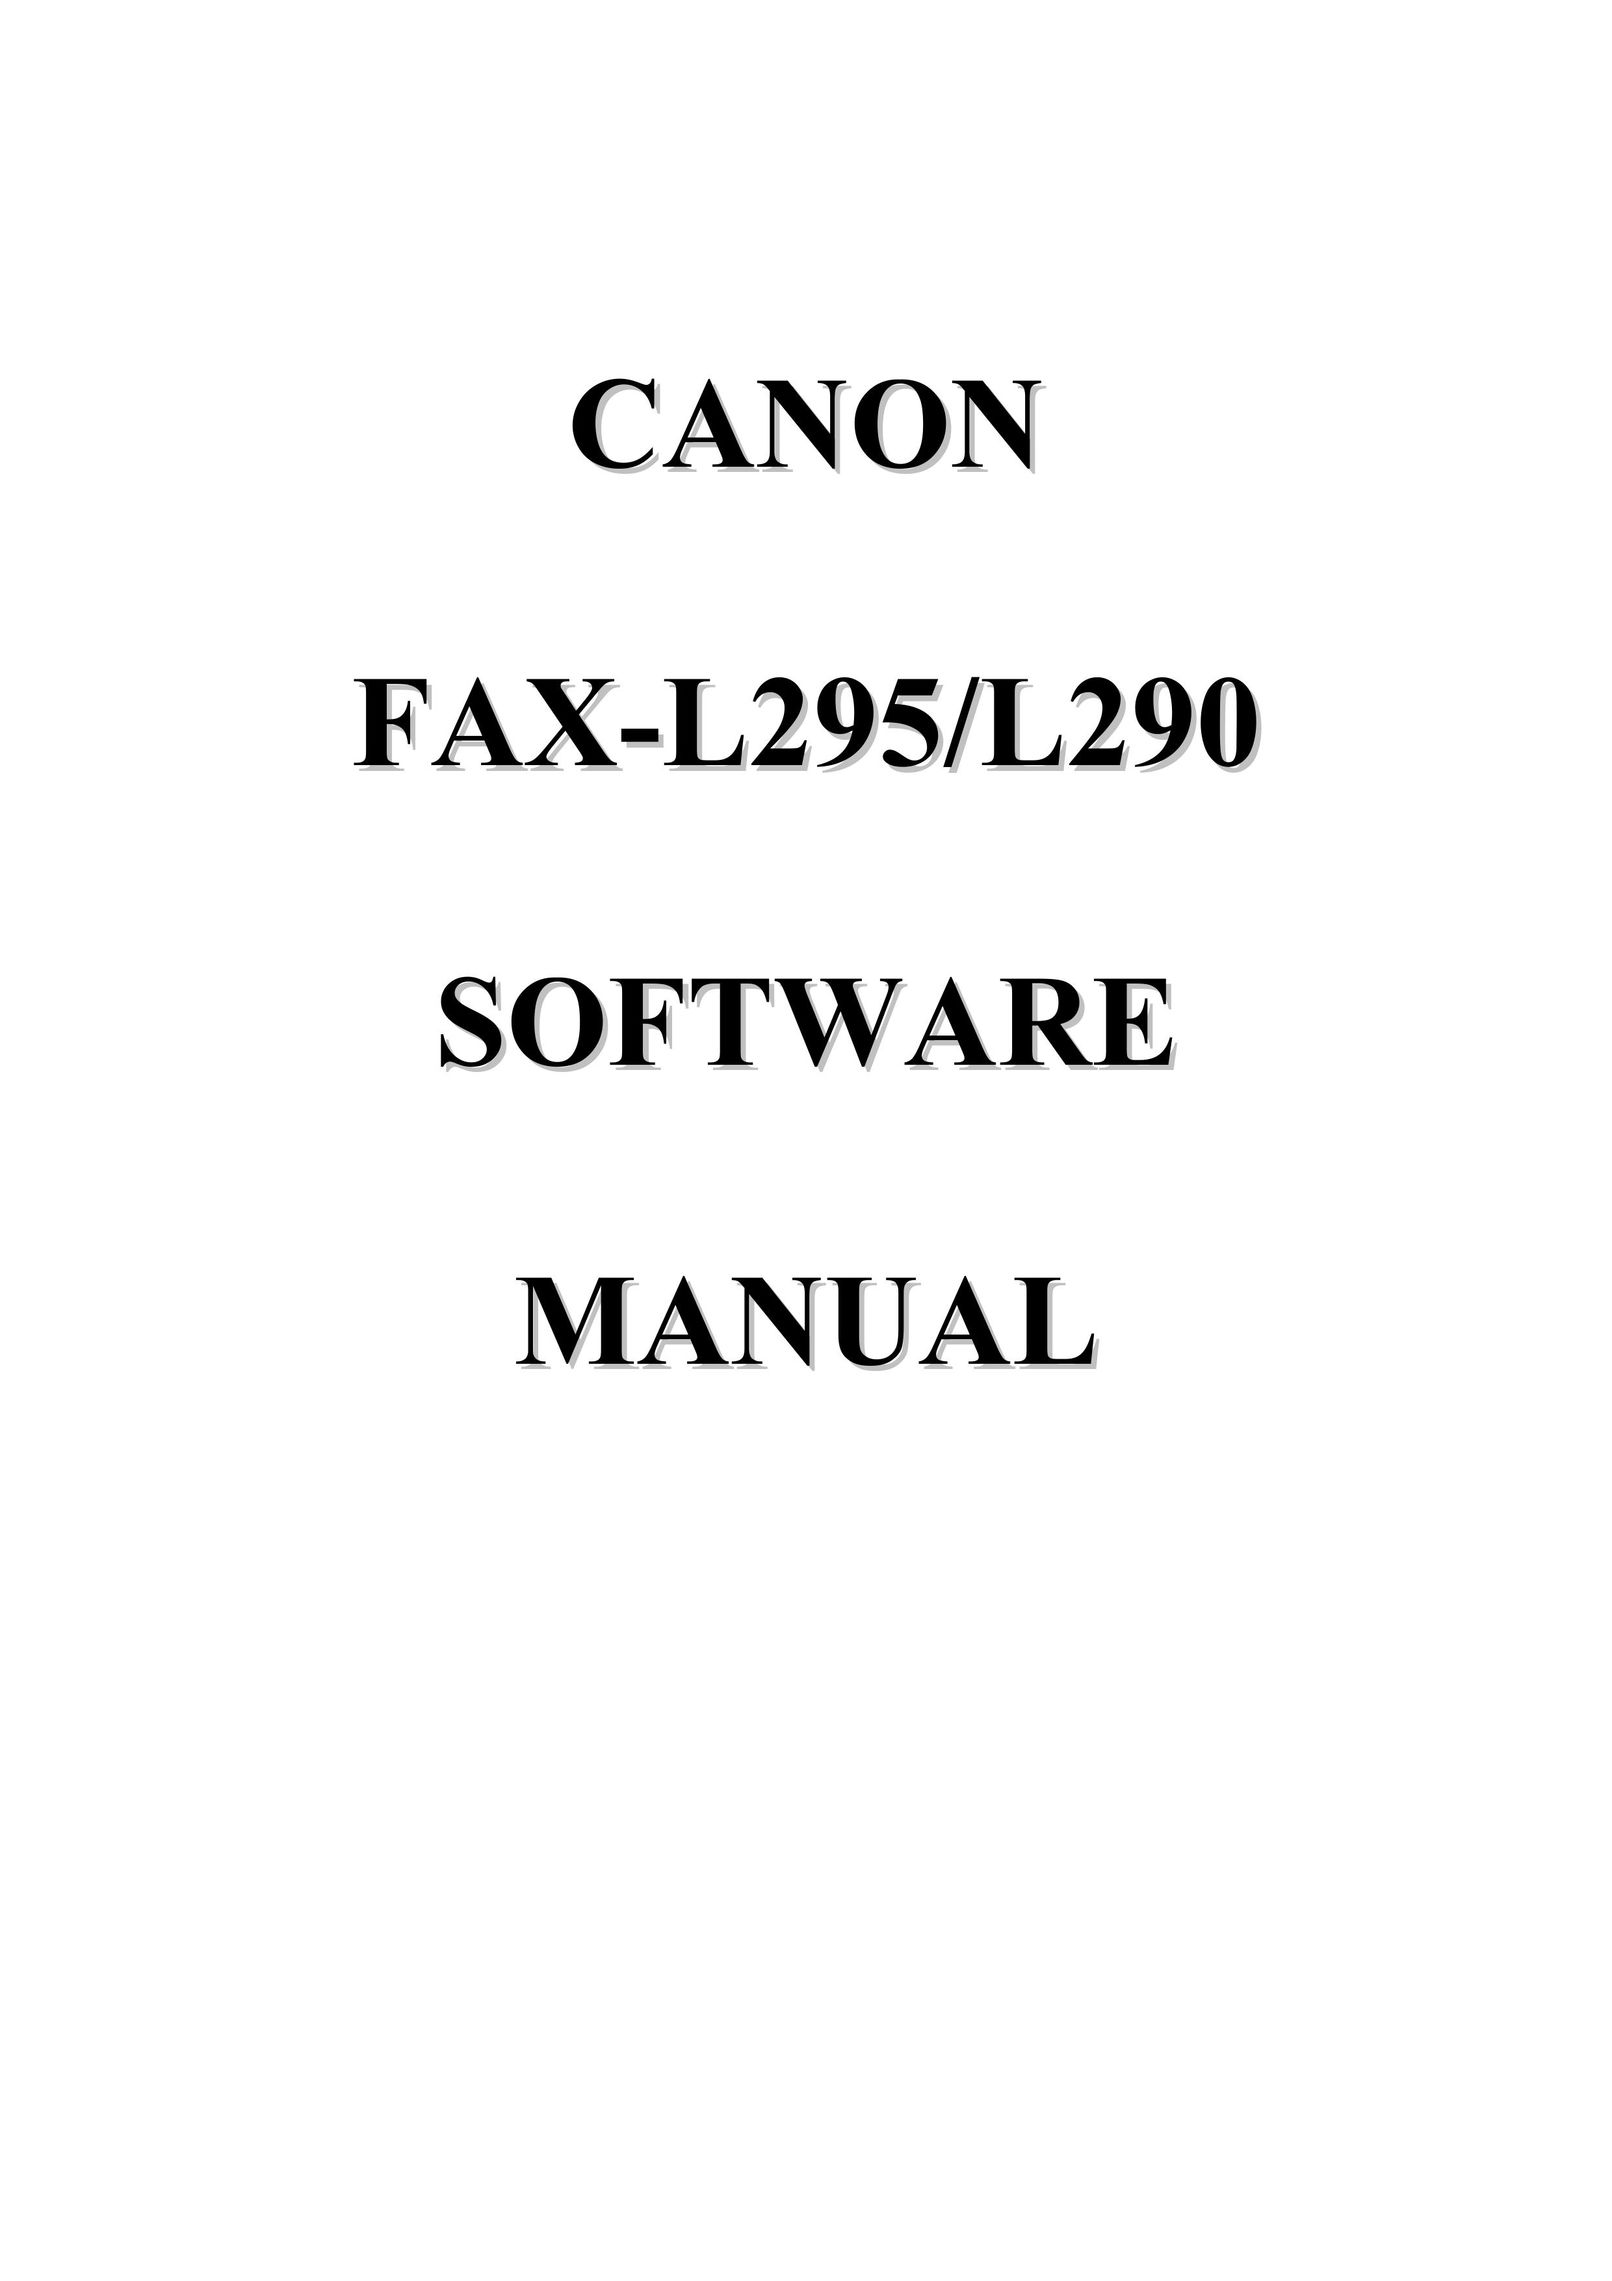 Canon FAX-L295/L290 Fax Machine User Manual